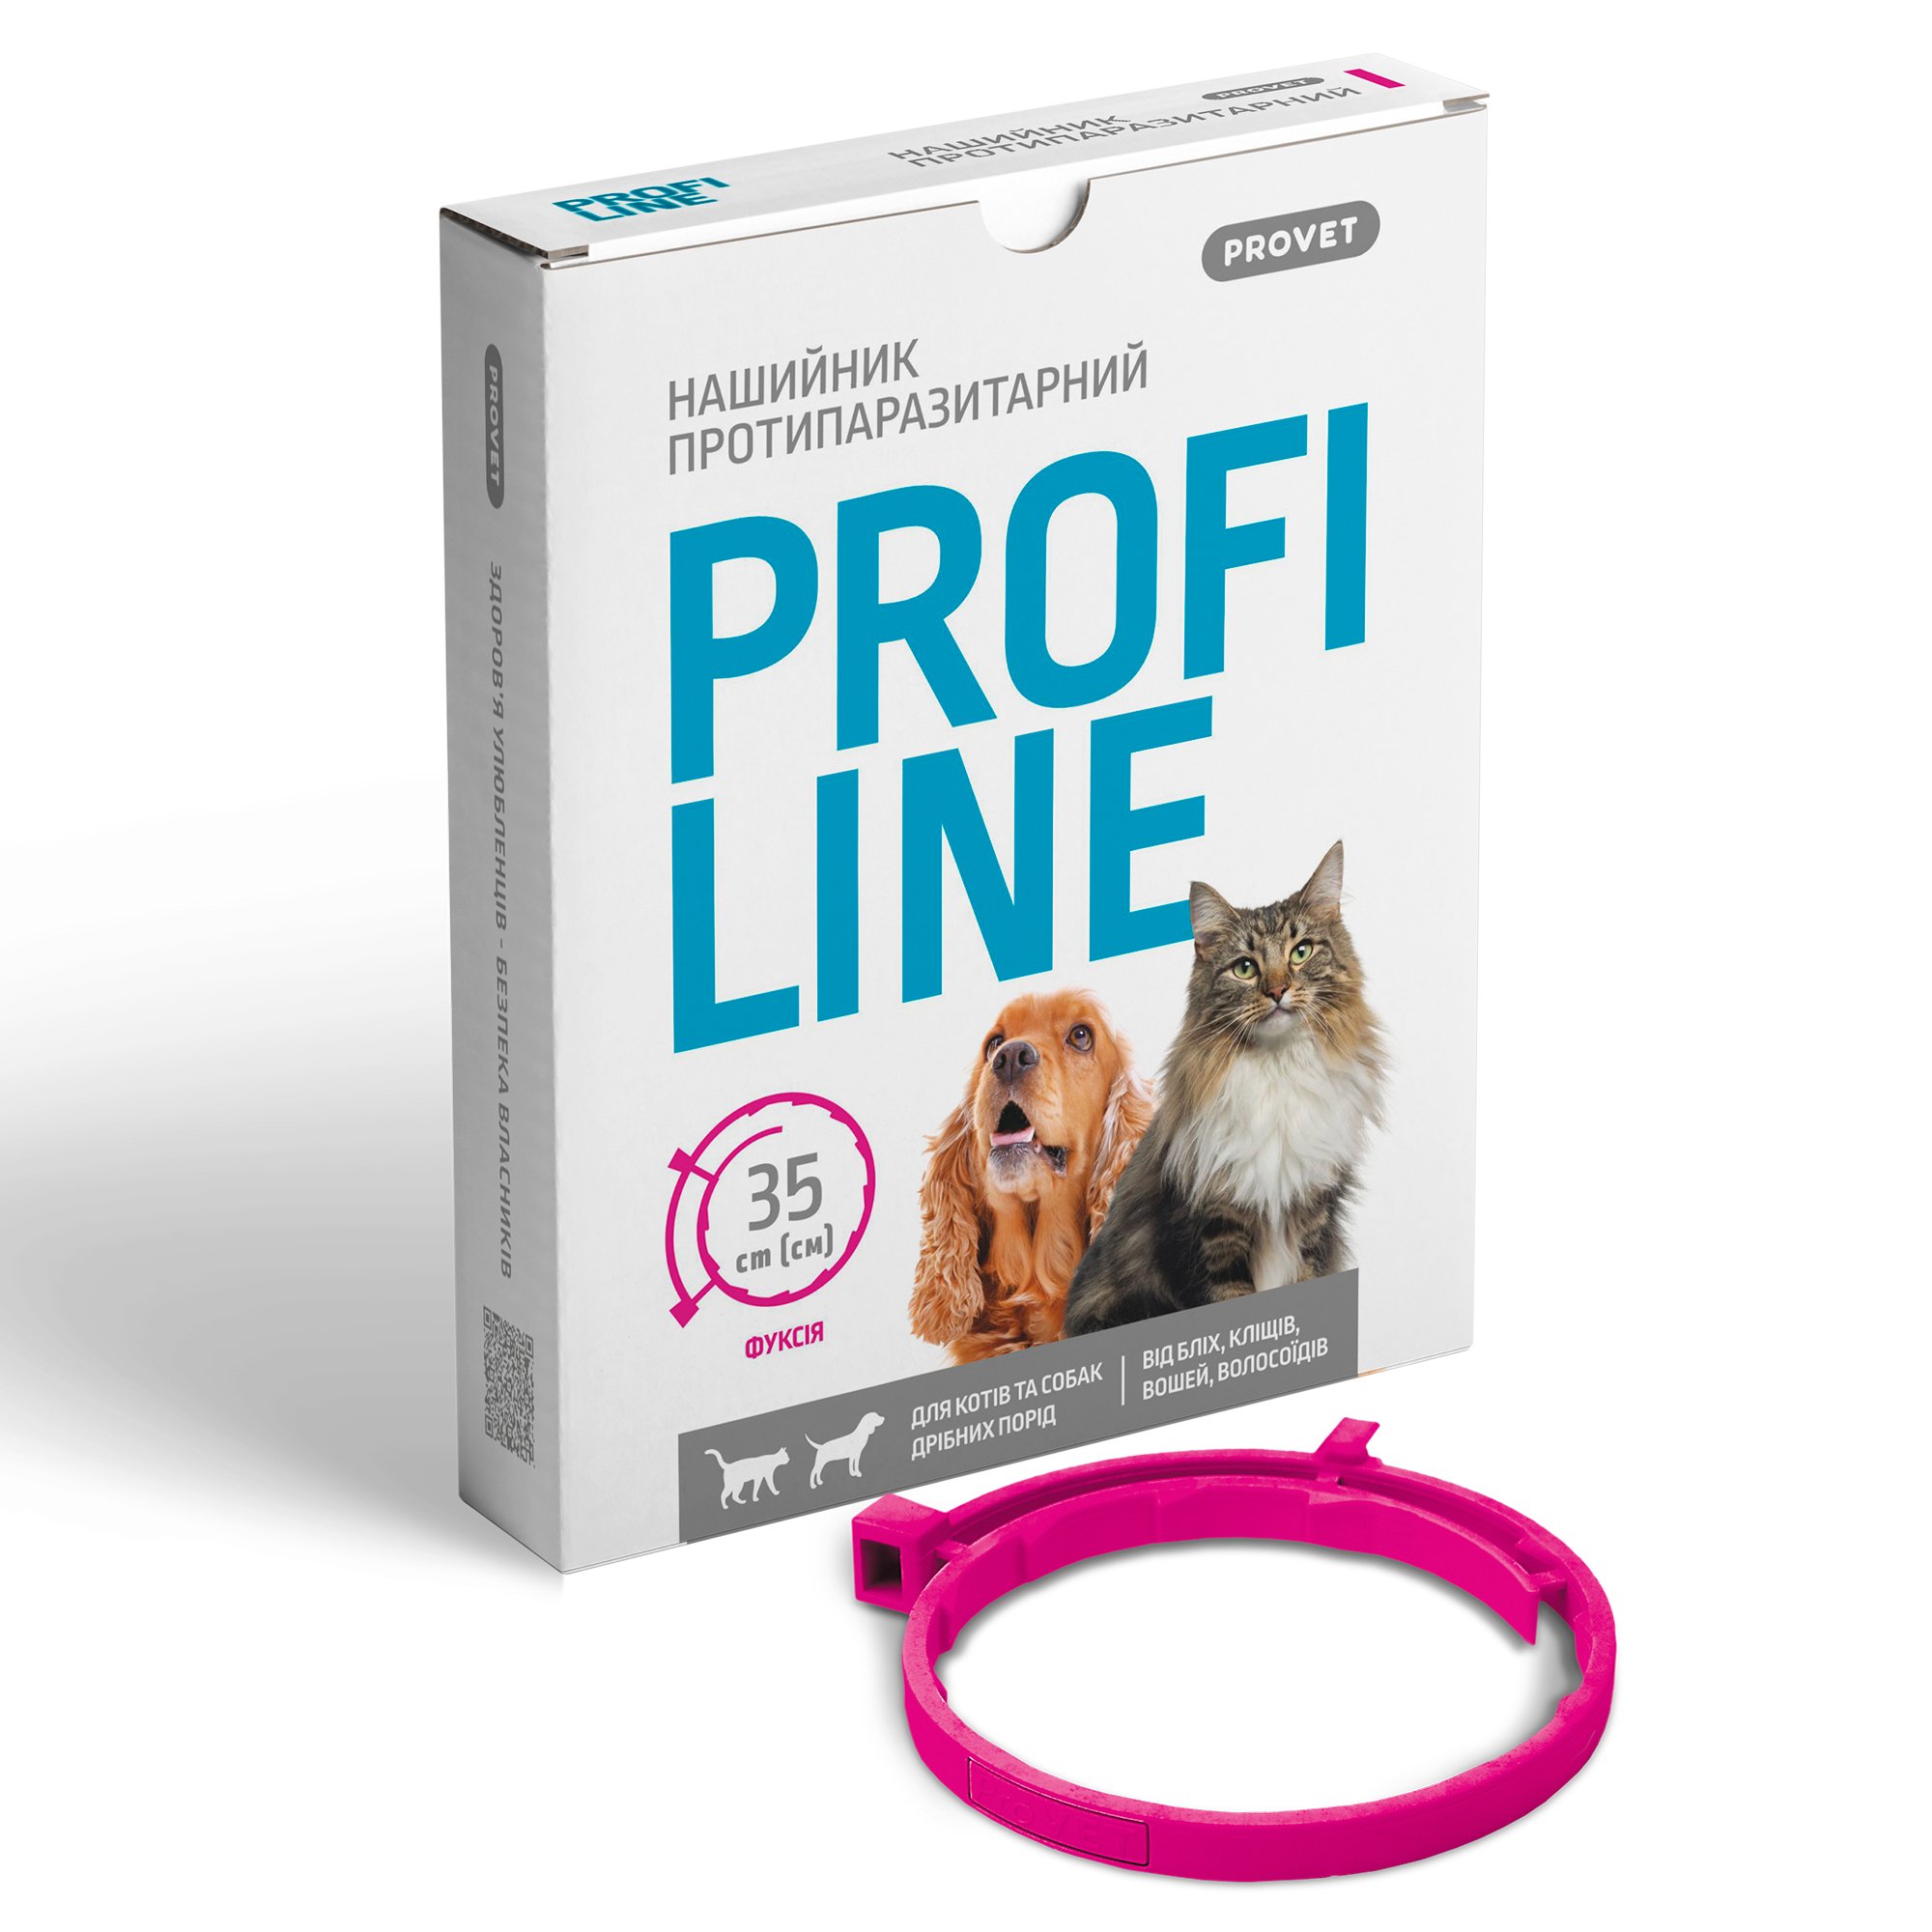 Ошейник протипаразитарний ProVET Profiline для кошек и собак малых пород 35 см фуксия - фото 3